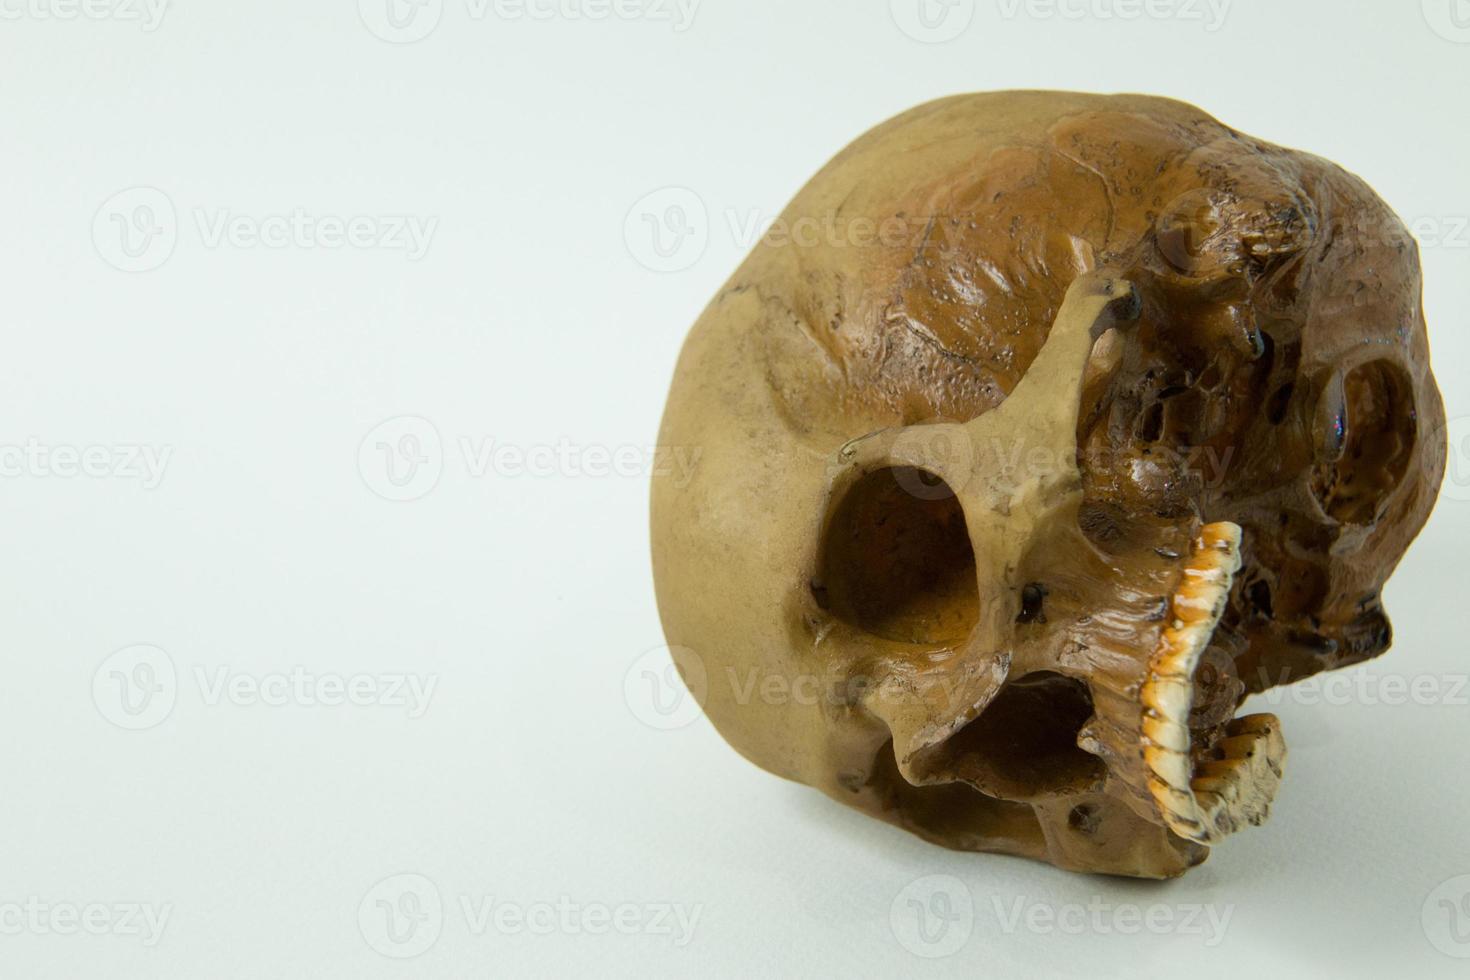 immagine ravvicinata del cranio su sfondo bianco. foto